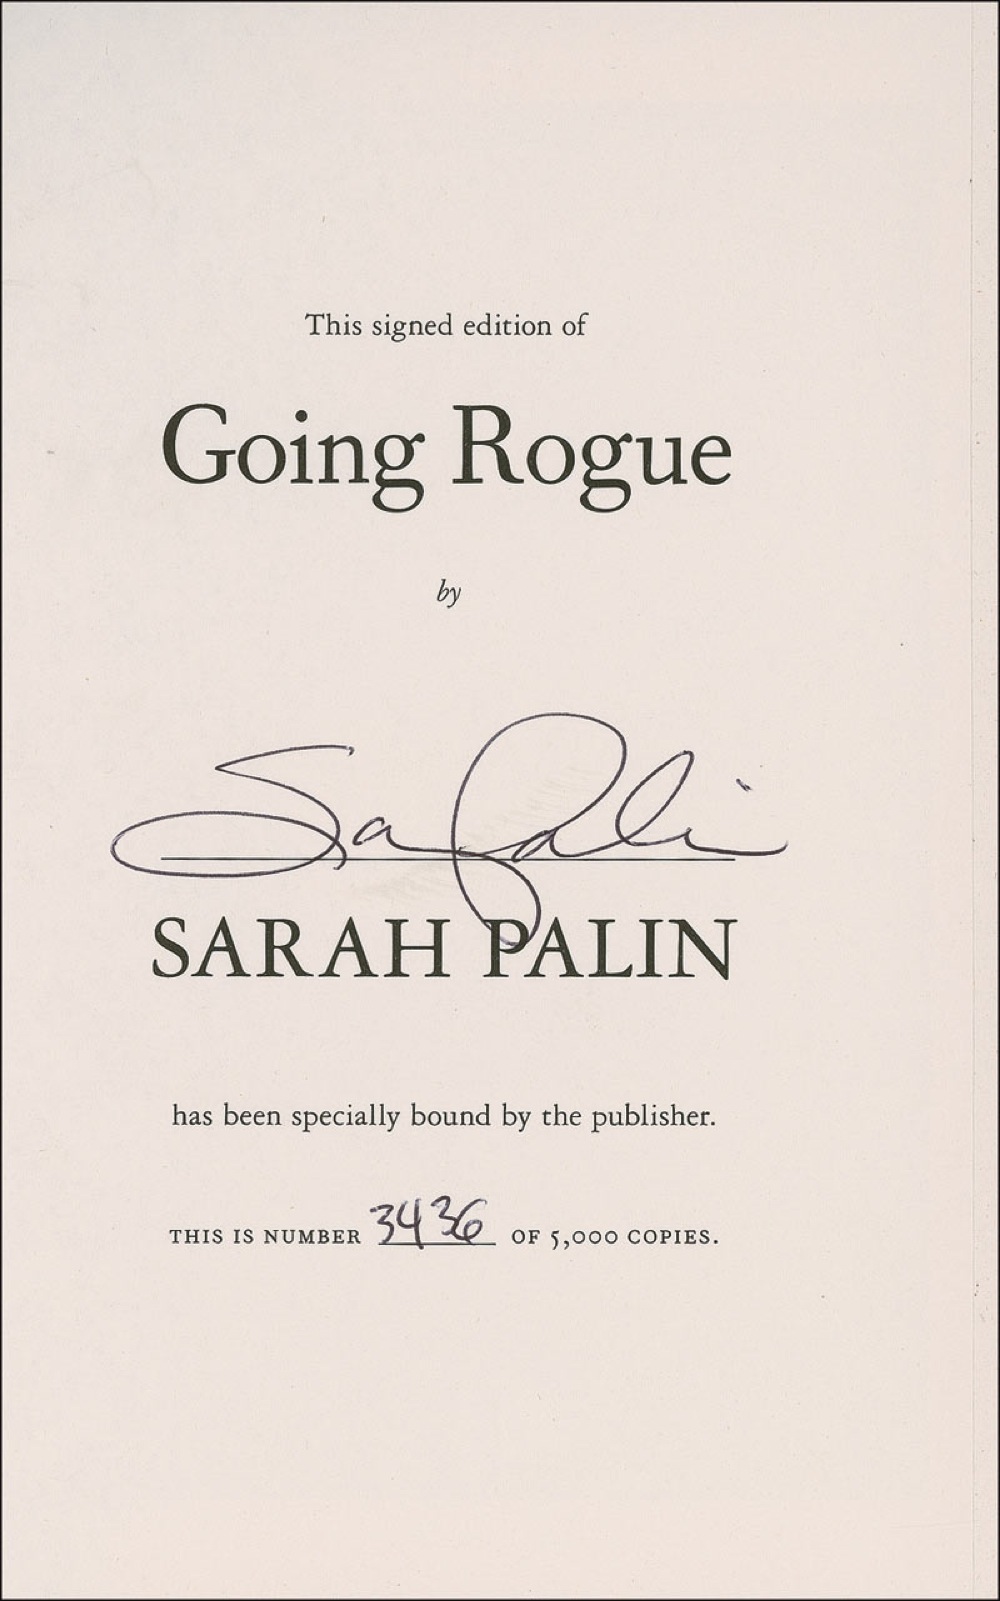 Lot #357 Sarah Palin